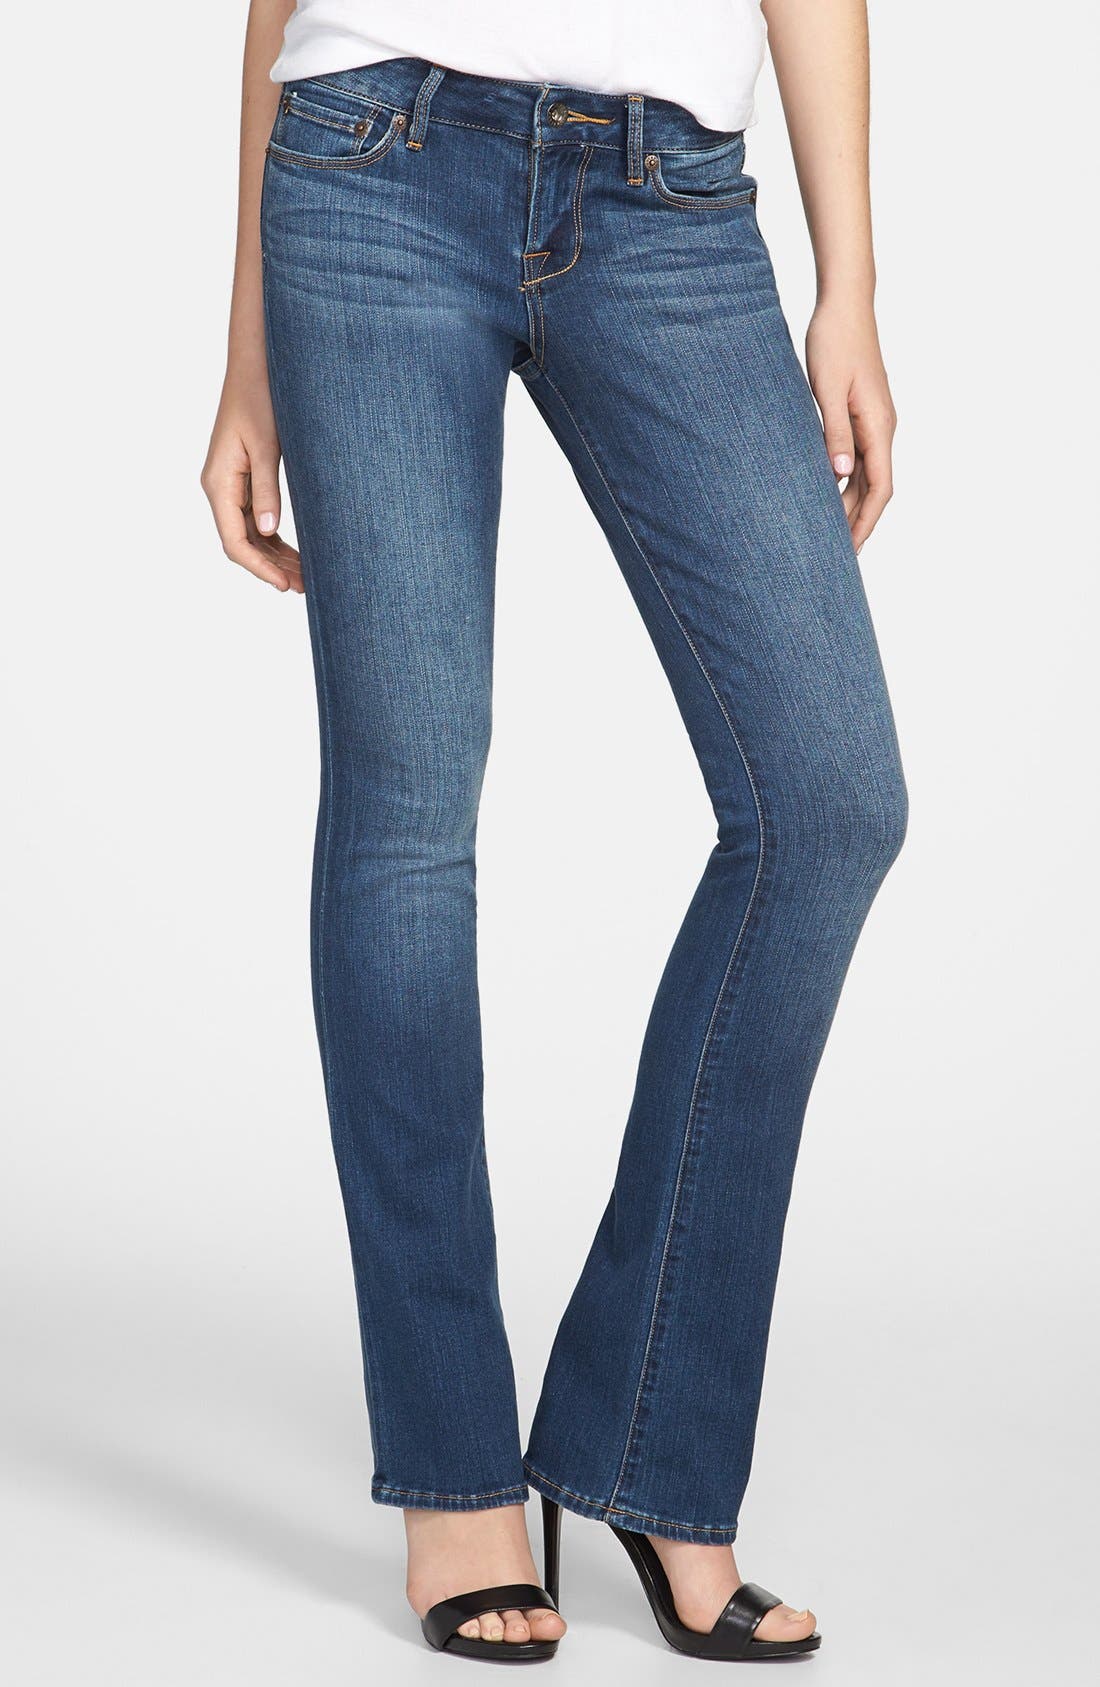 lucky brand women's boot cut jeans